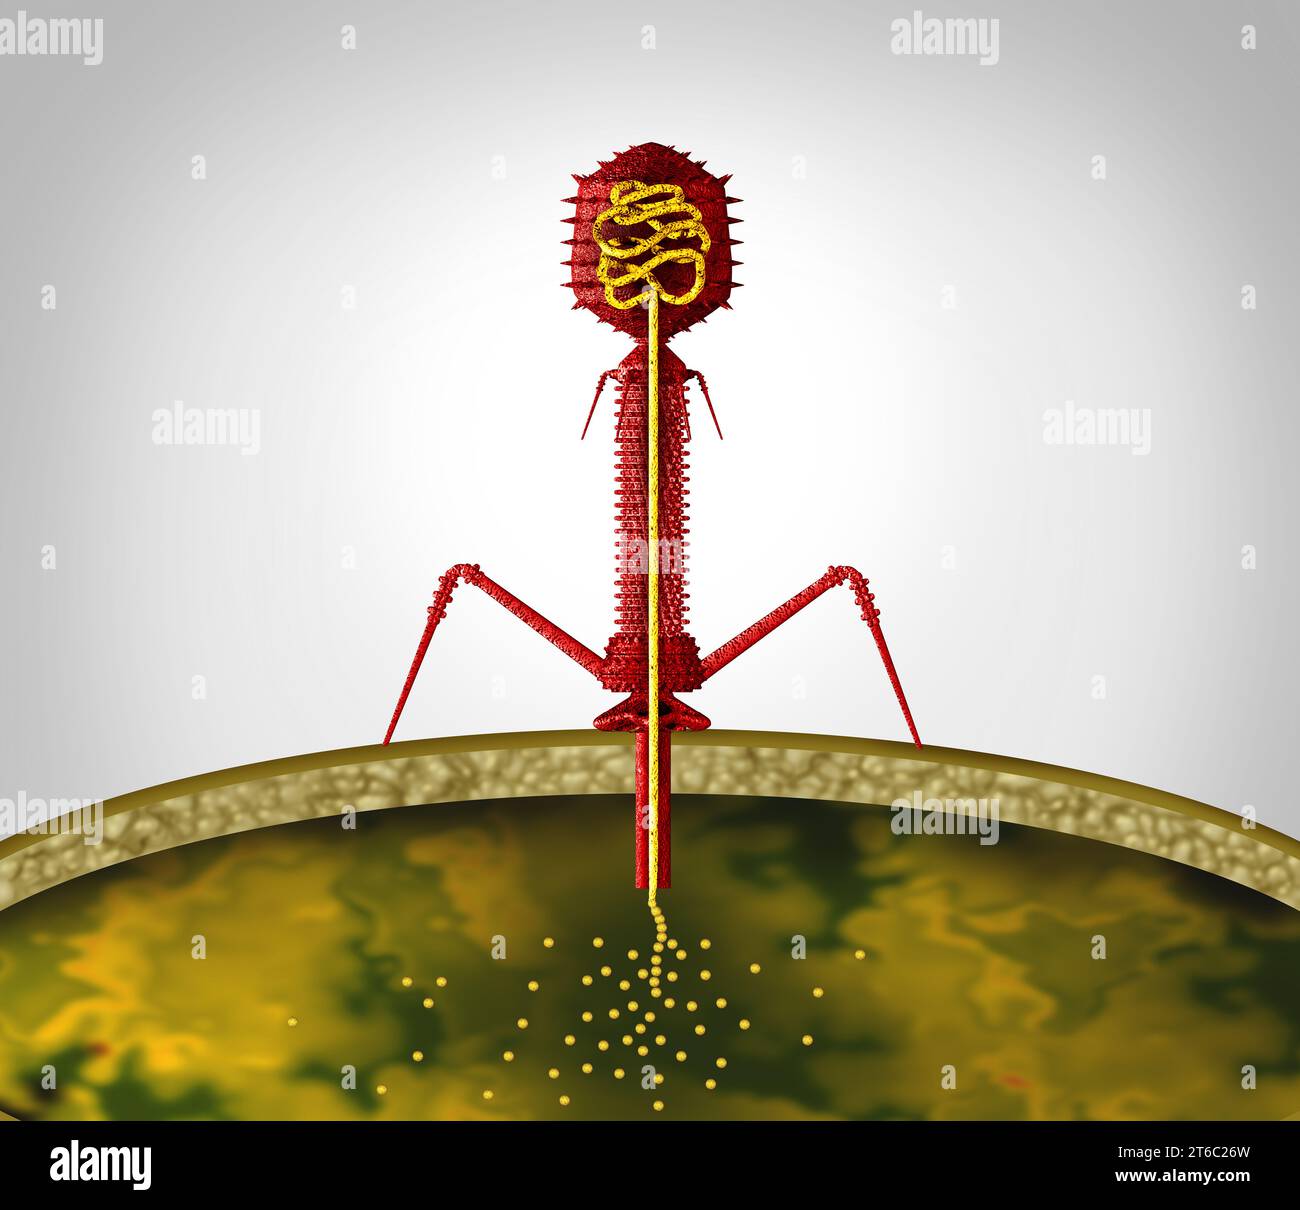 Batteriofago virus ciclo fago replicando all'interno di un patogeno come un virus con acido nucleico che infetta batteri come simbolo virologico come un patogeno Foto Stock